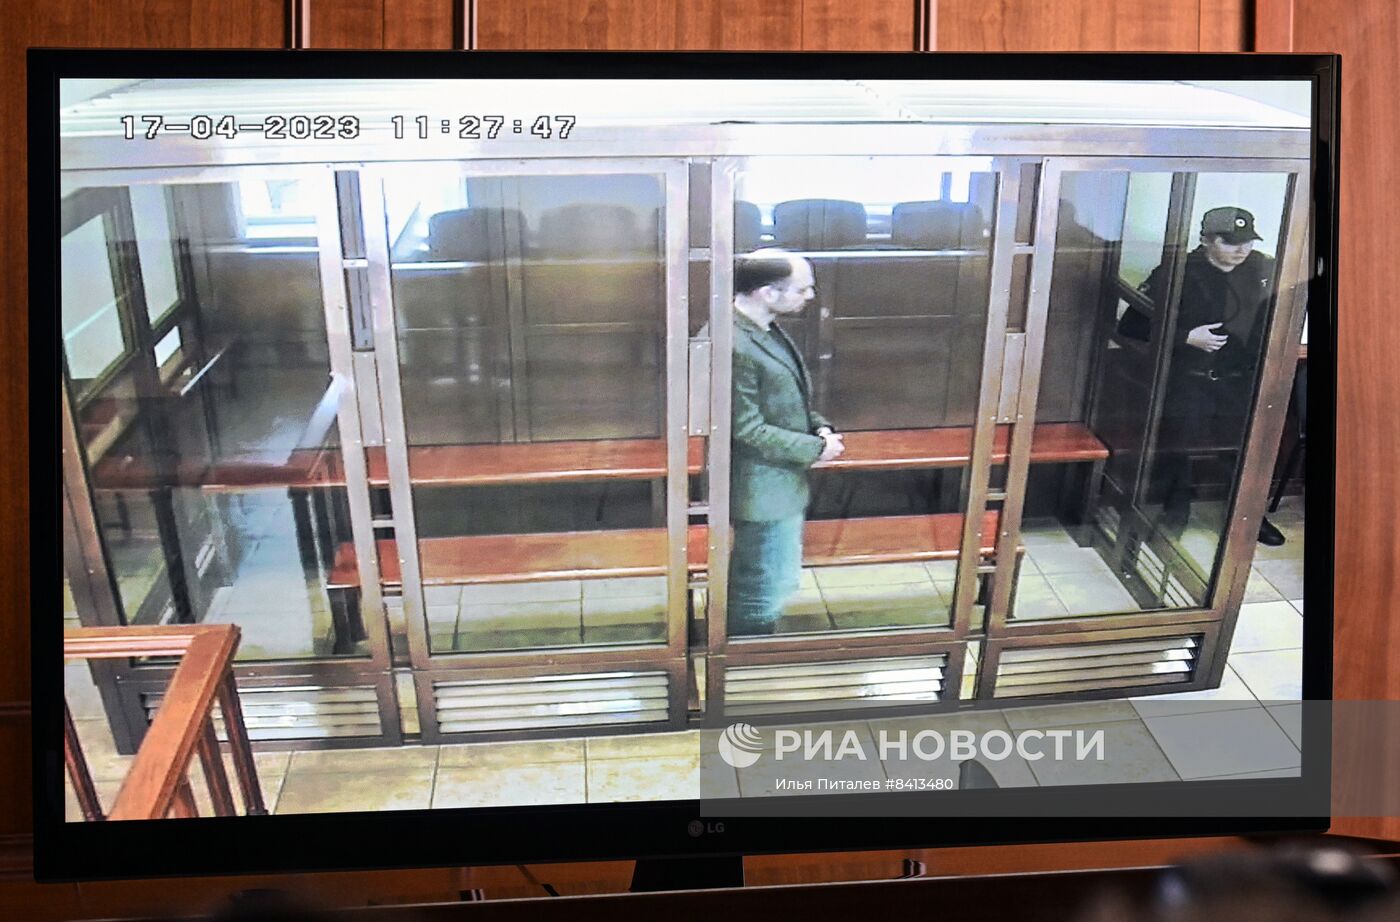 Оглашение приговора В. Кара-Мурзе по делу о госизмене и распространении фейков про ВС РФ